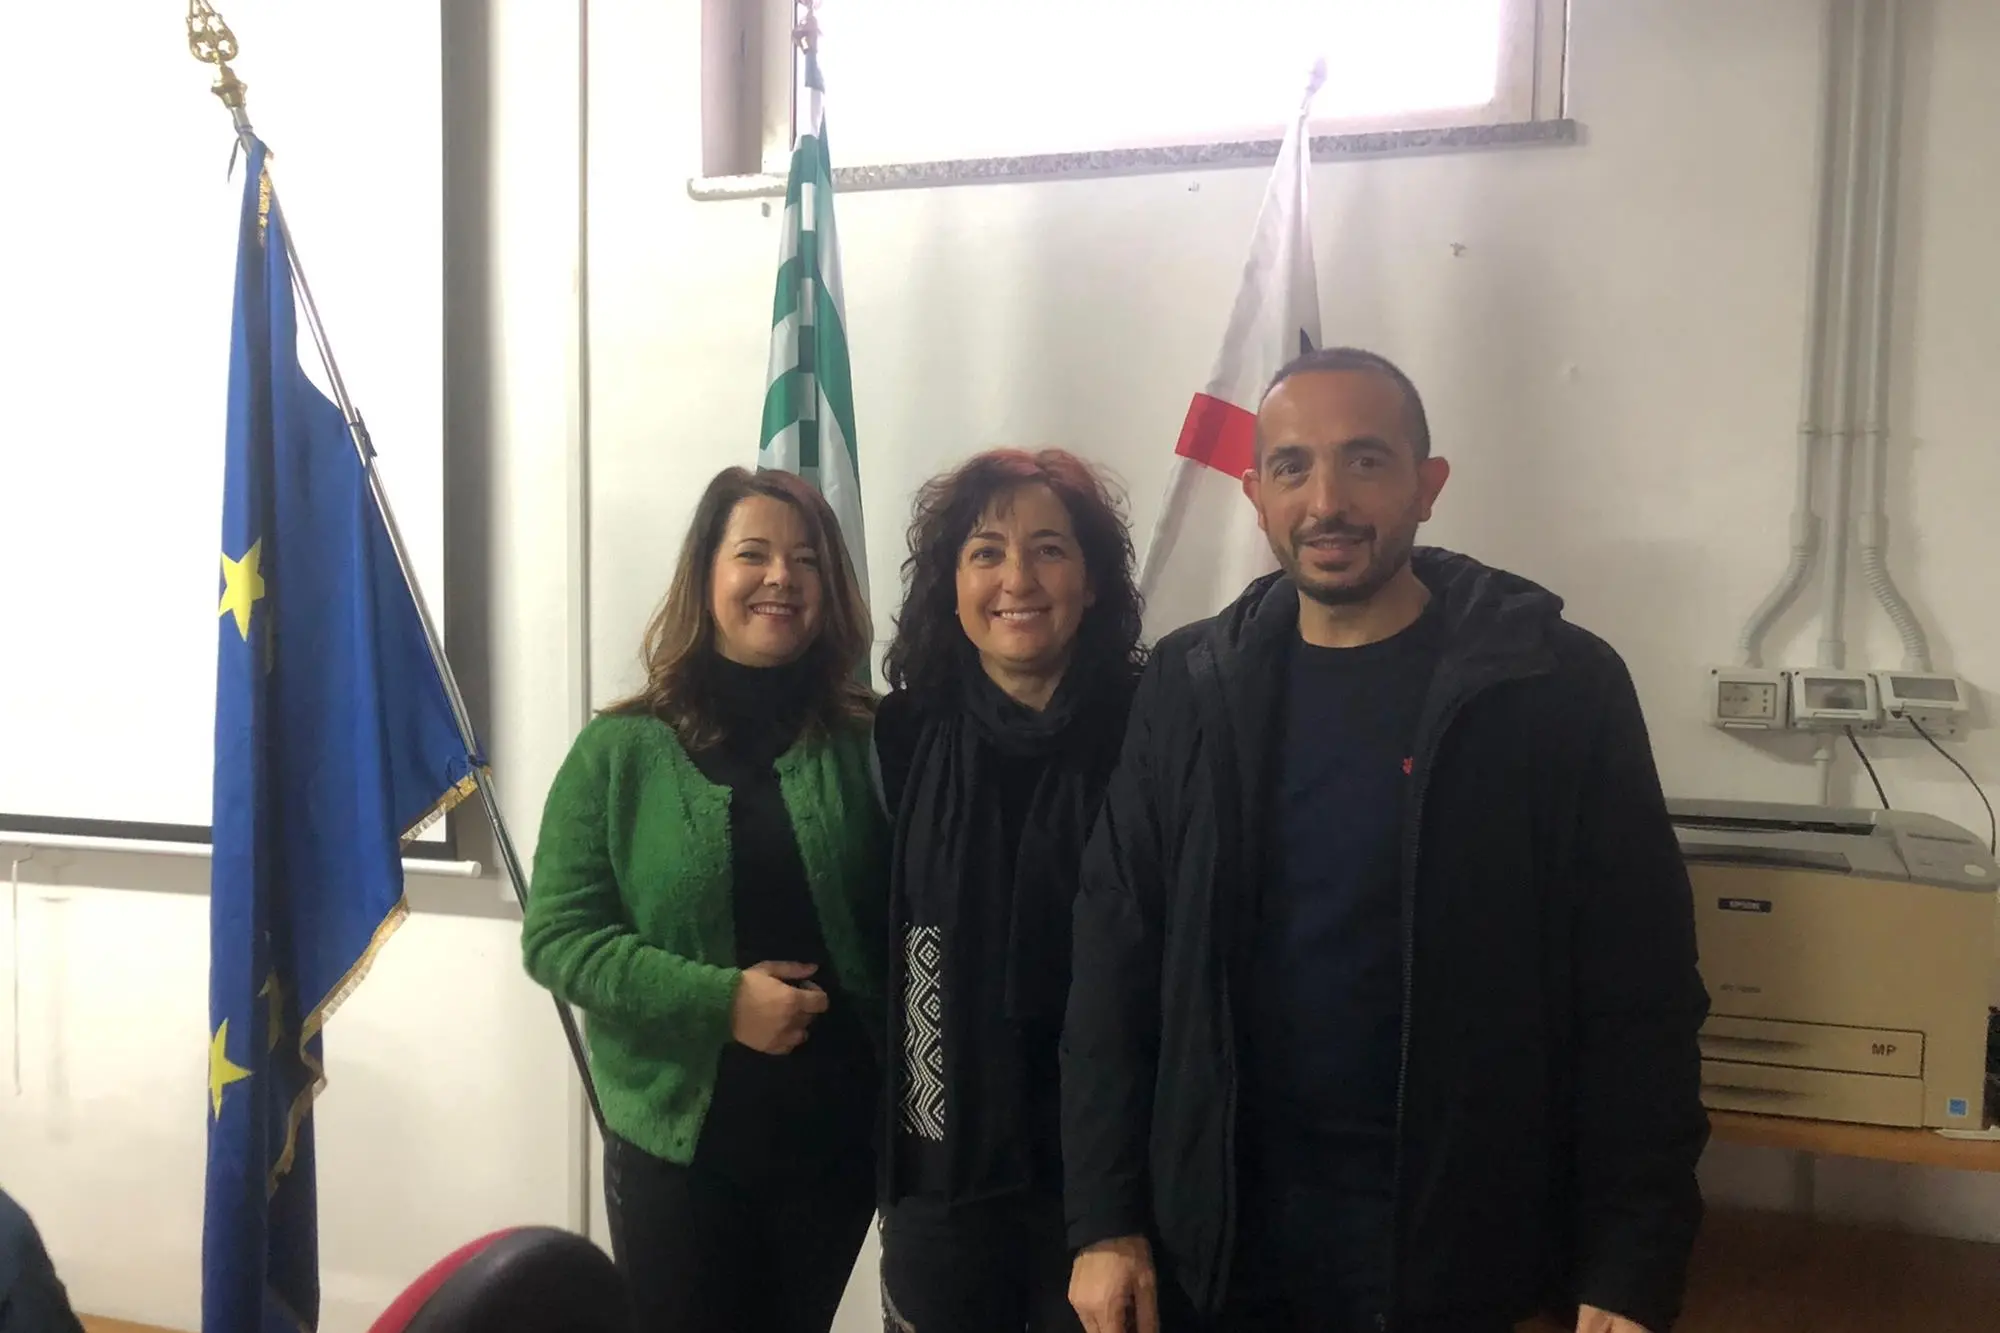 La nuova segreteria della Cisl Fp Ogliastra. Da sinistra, Laura Loi, Ida Cabras e Fabrizio Meloni (foto Secci)